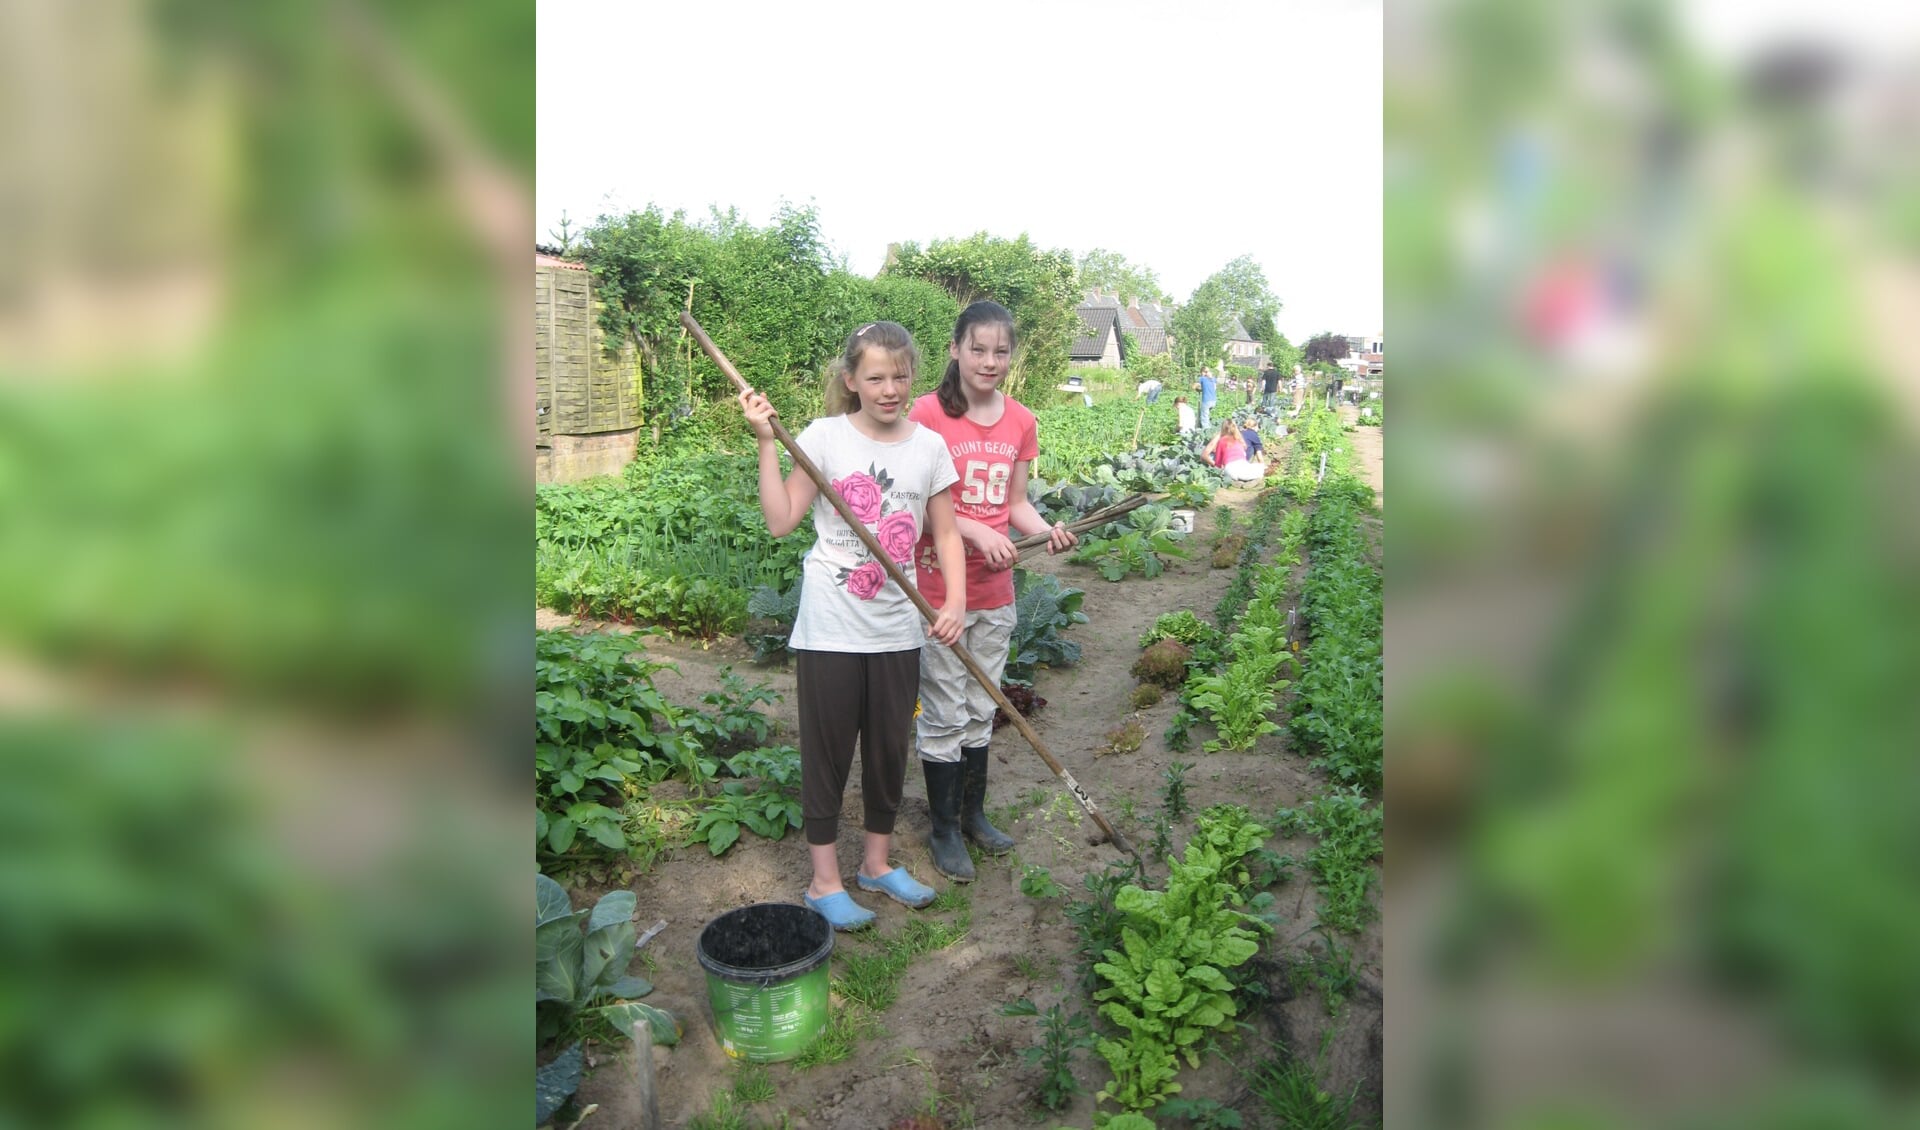 Verbouw met een vriend of vriendin groente in je eigen tuin. Foto: PR